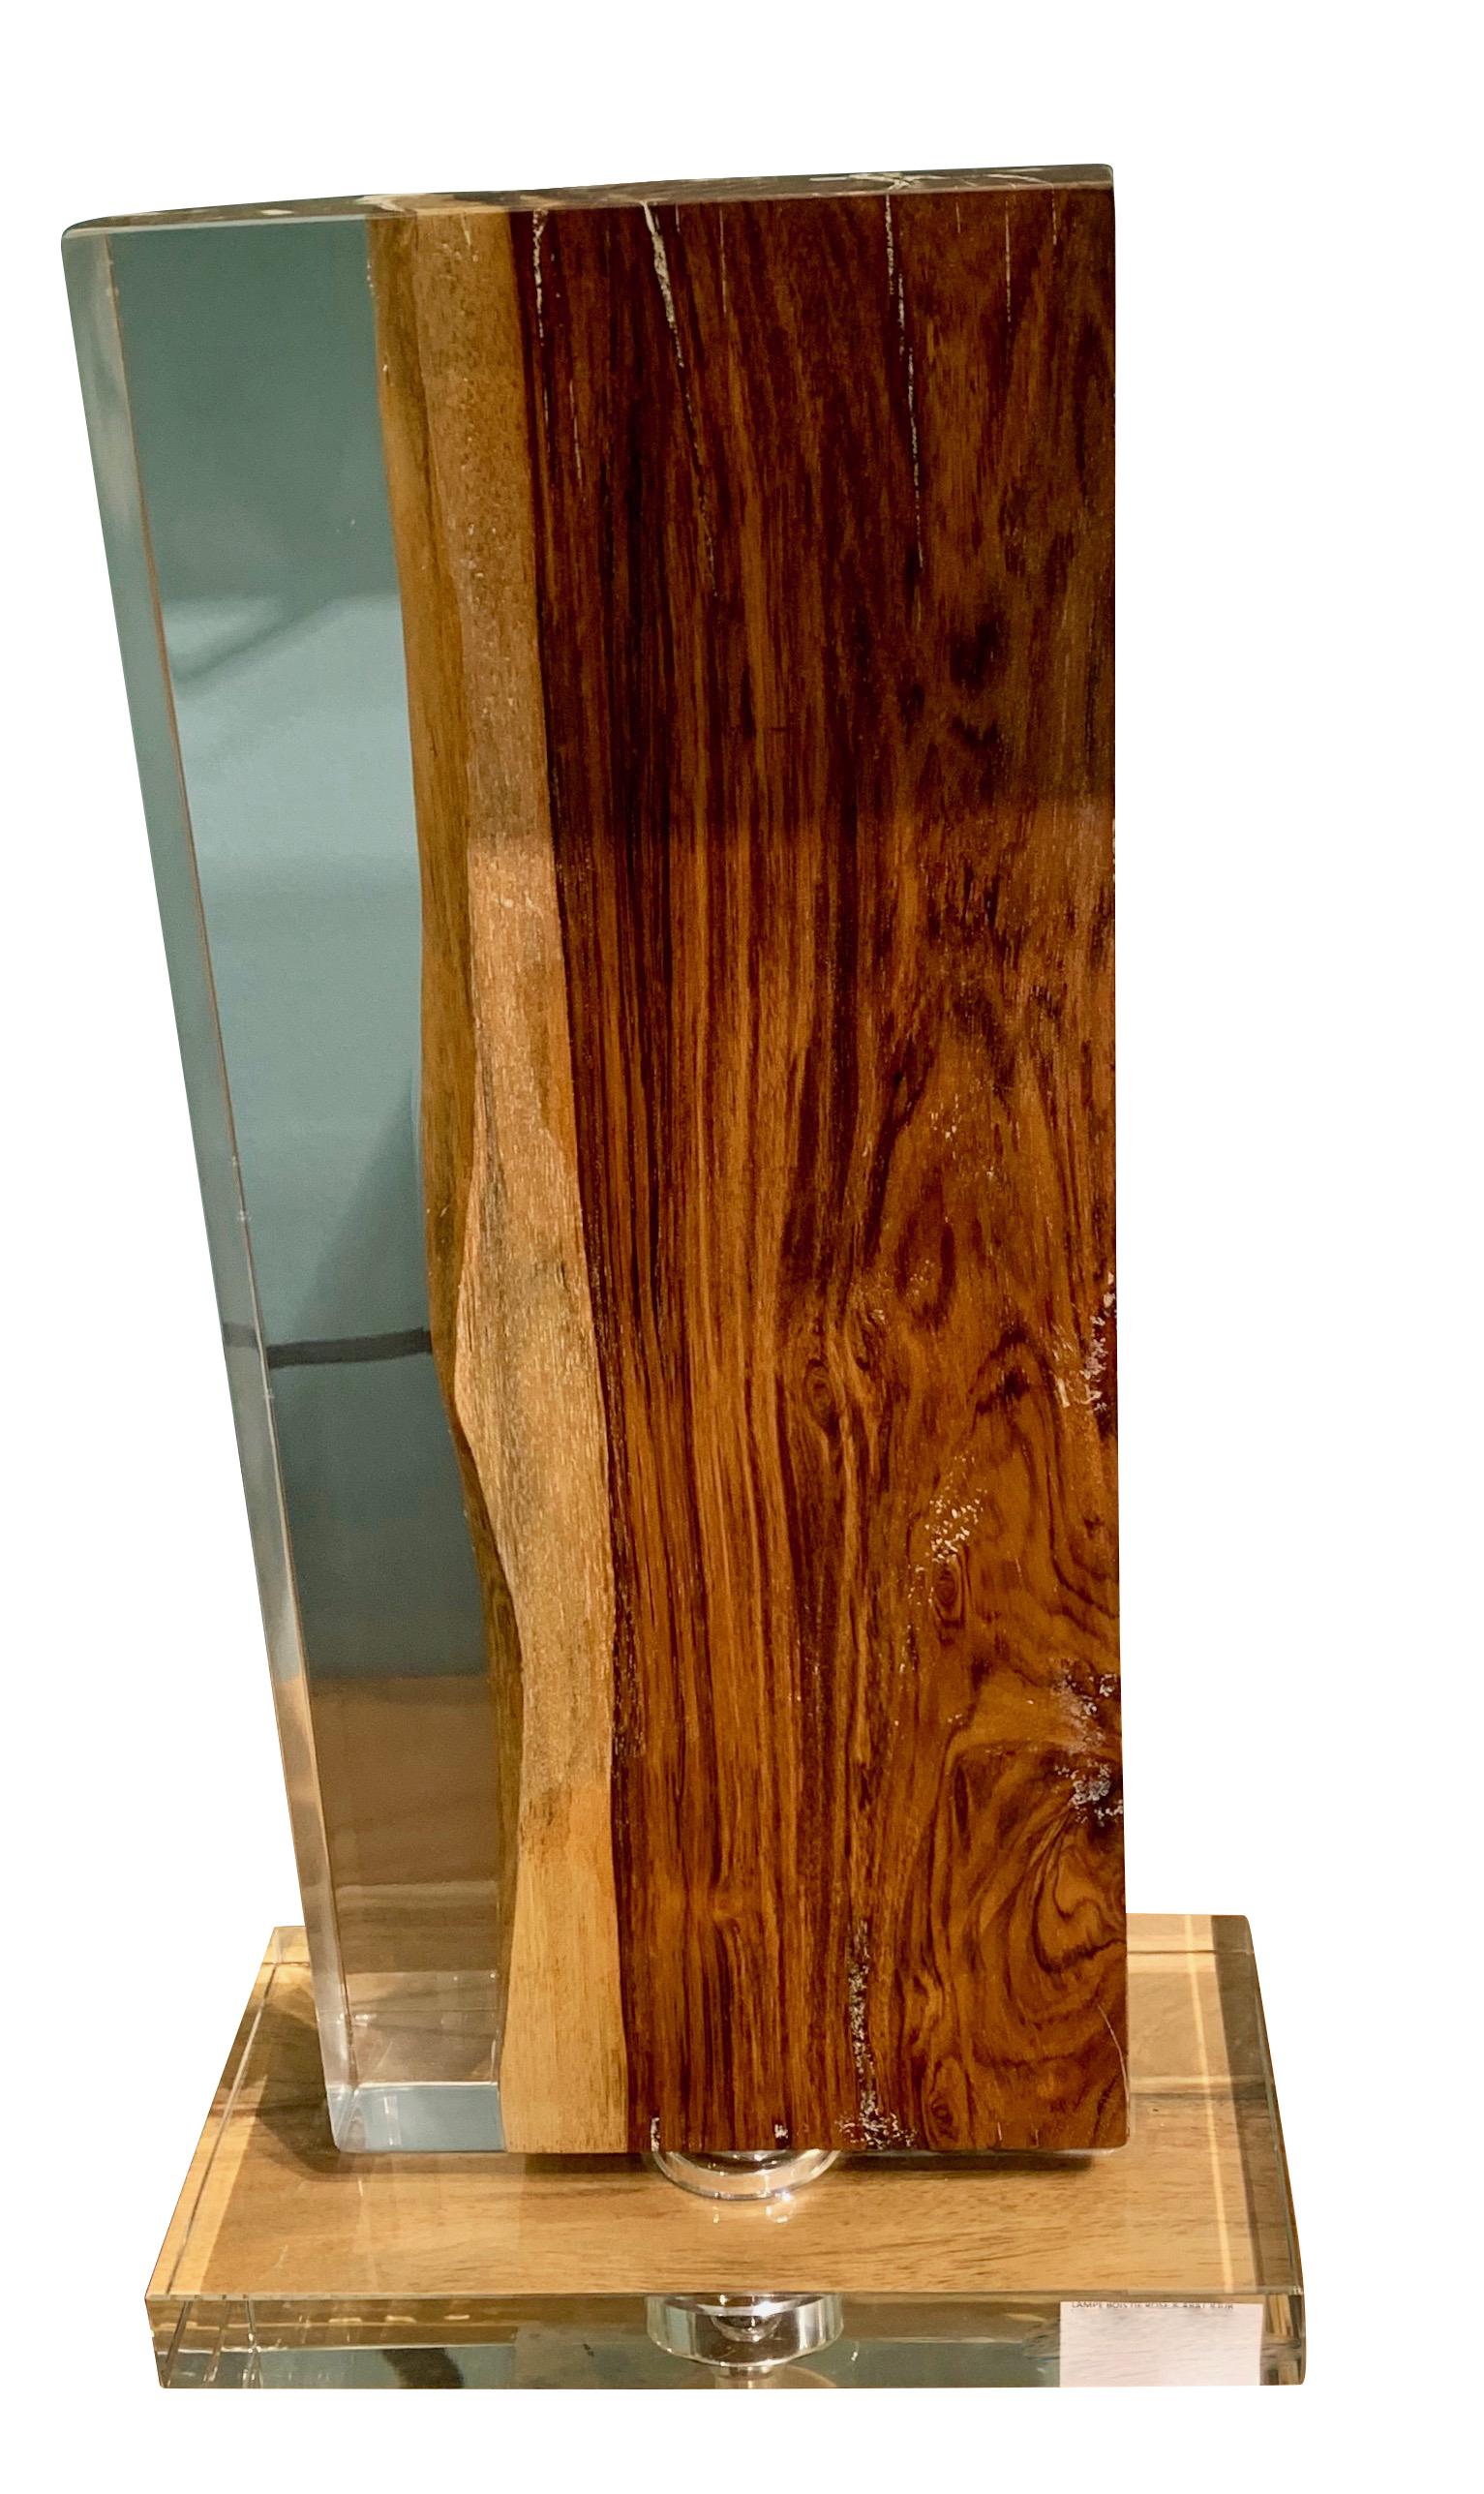 Paire de lampes indonésiennes contemporaines en résine et palissandre.
Le bois de palissandre est enrobé de résine.
Forme rectangulaire verticale haute.
Mesures : Abat-jour en lin blanc 16